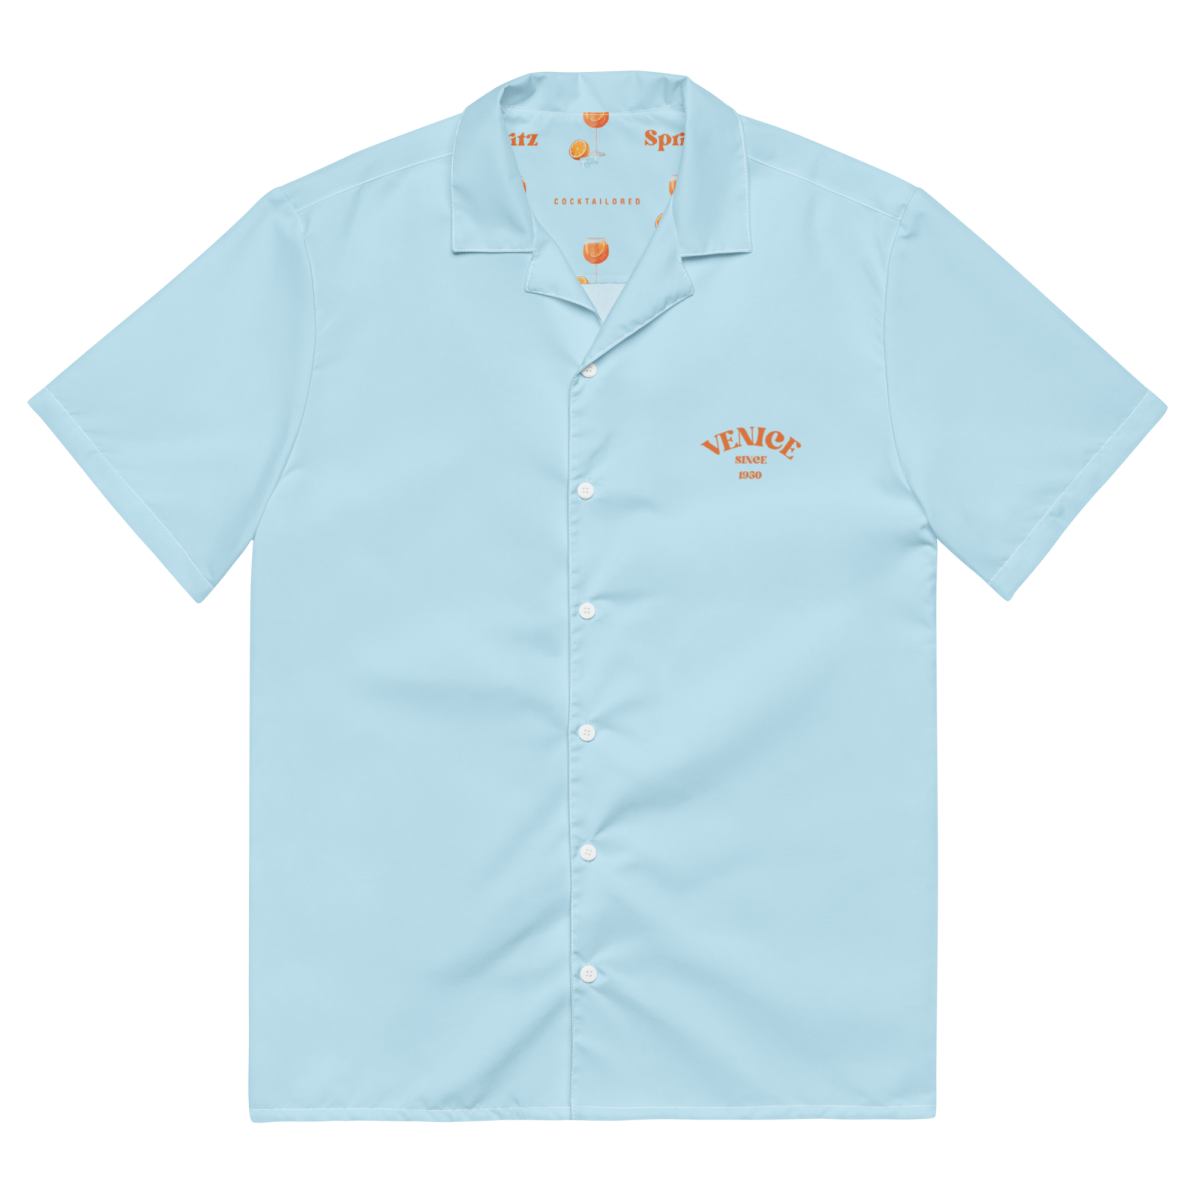 The Spritz Summer Shirt